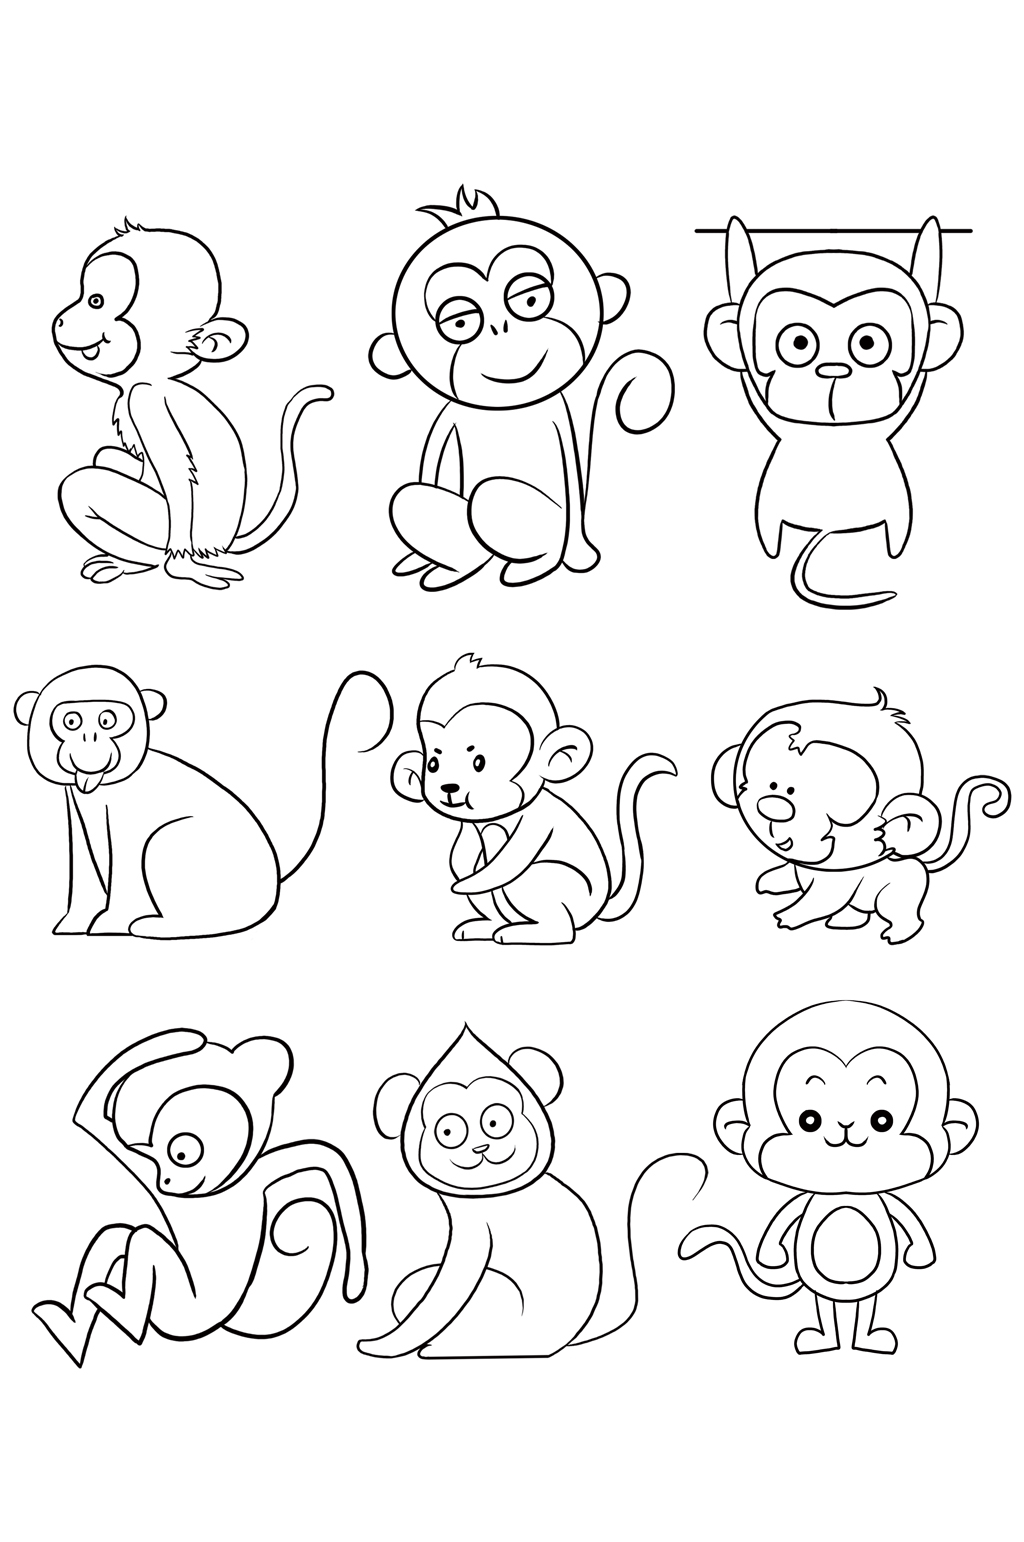 猴的简笔画简单图片